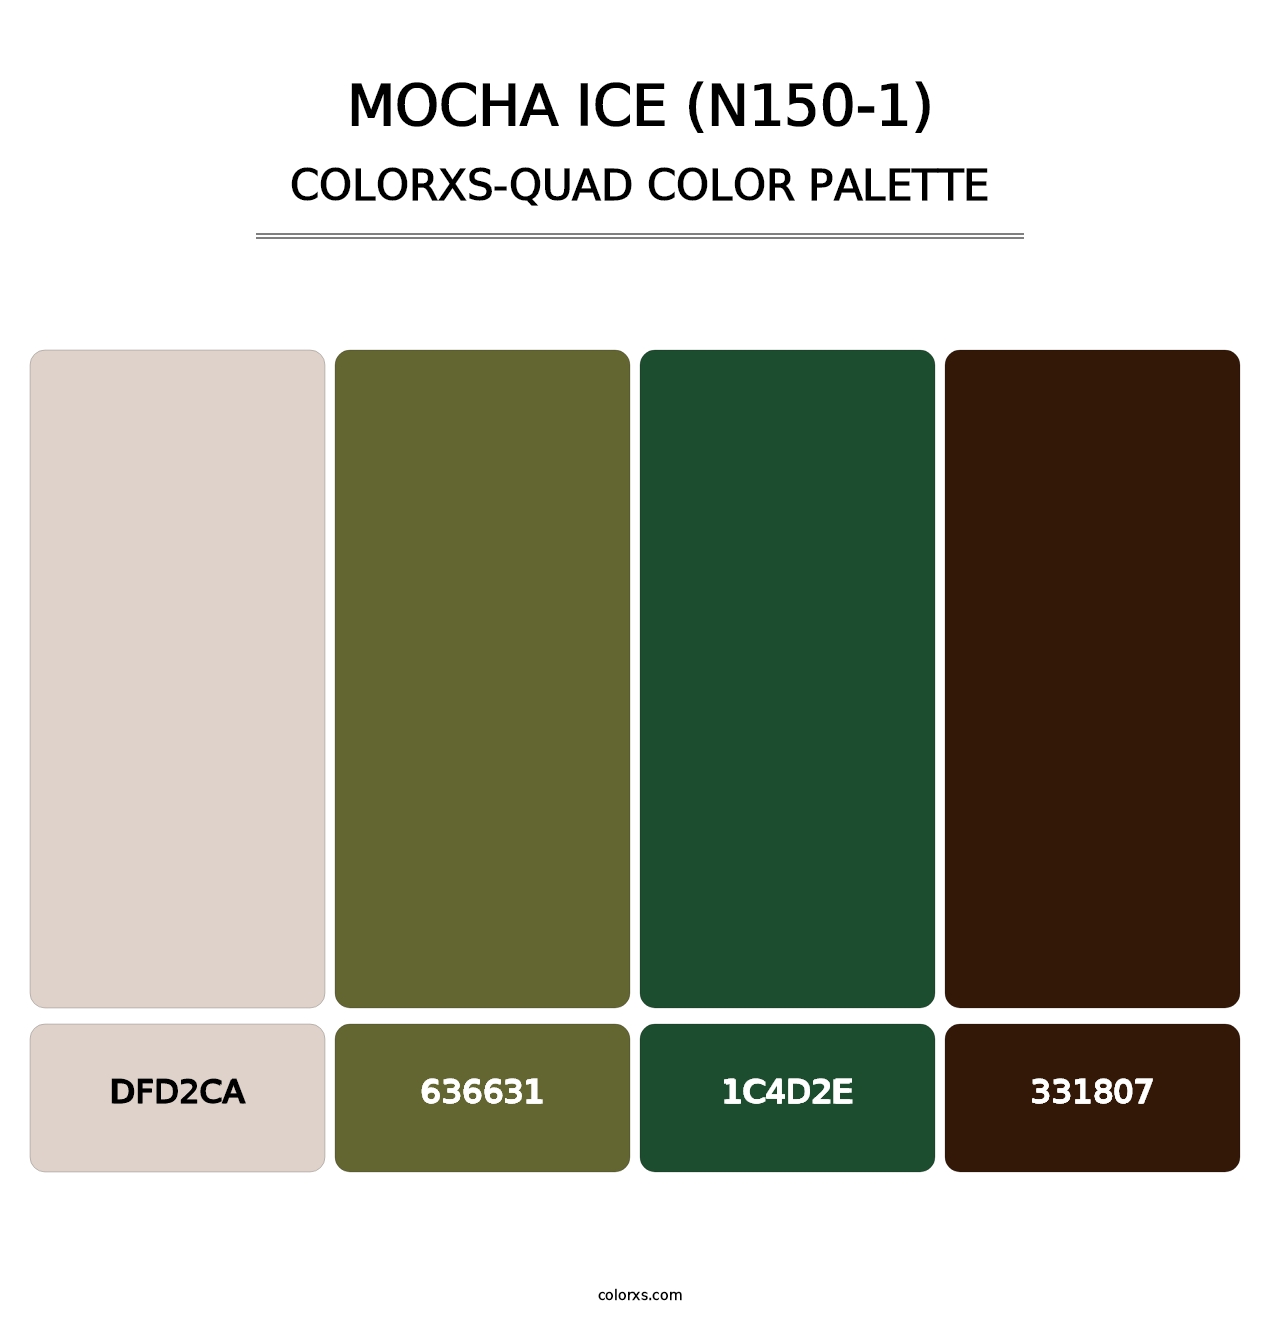 Mocha Ice (N150-1) - Colorxs Quad Palette